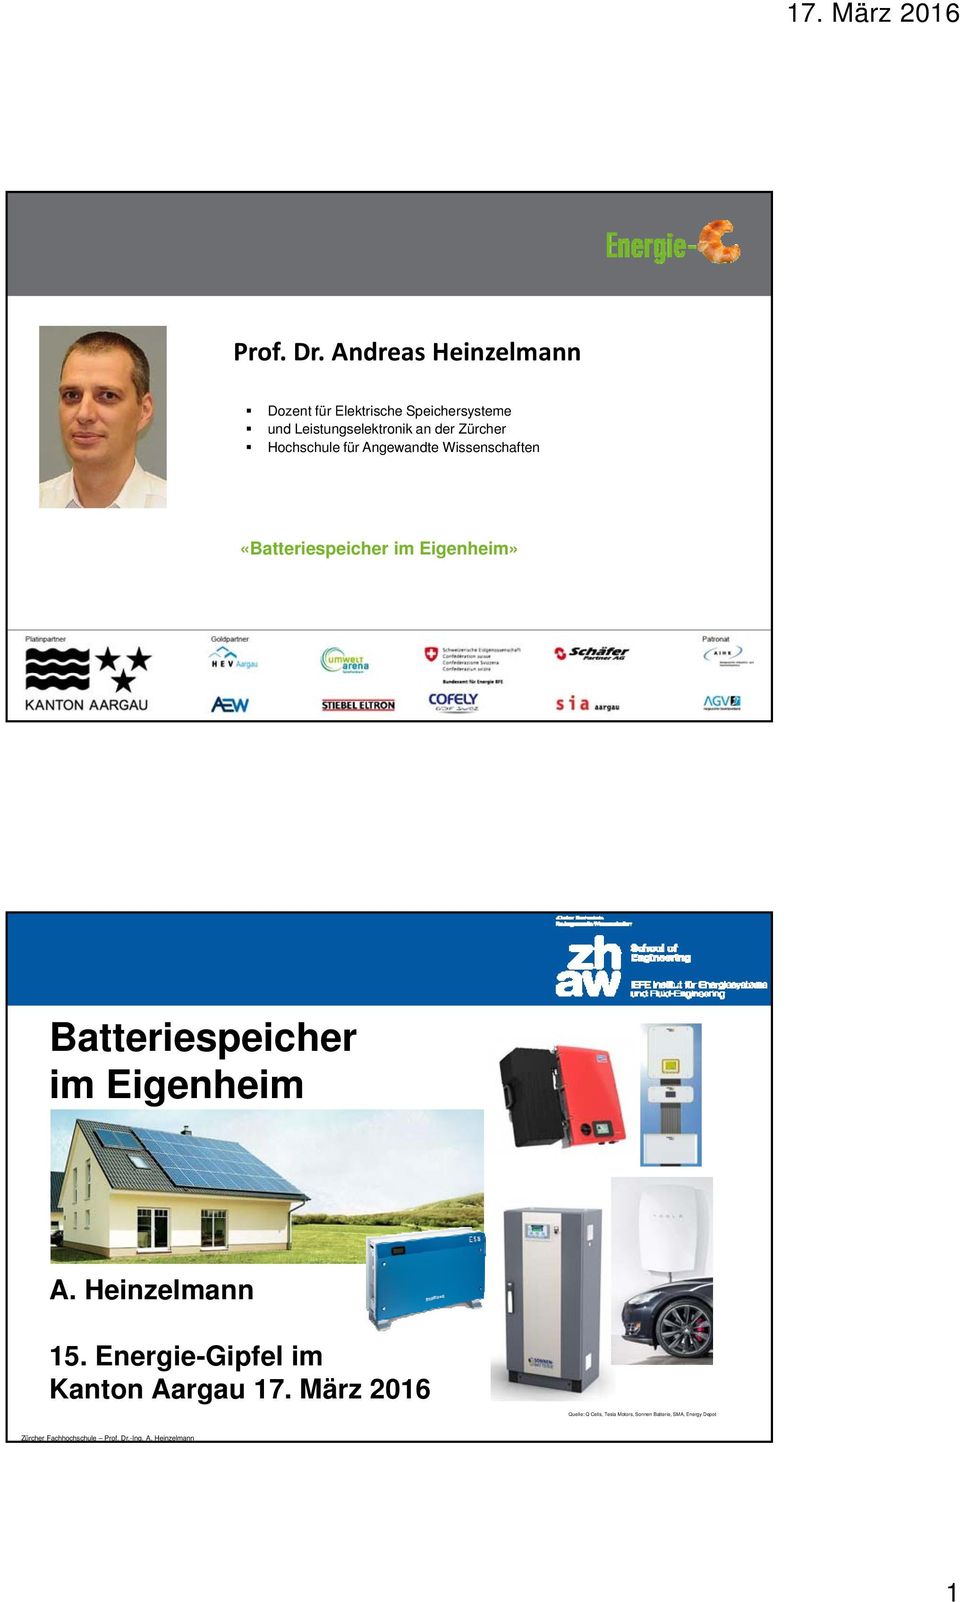 der Zürcher Hochschule für Angewandte Wissenschaften «Batteriespeicher im Eigenheim»